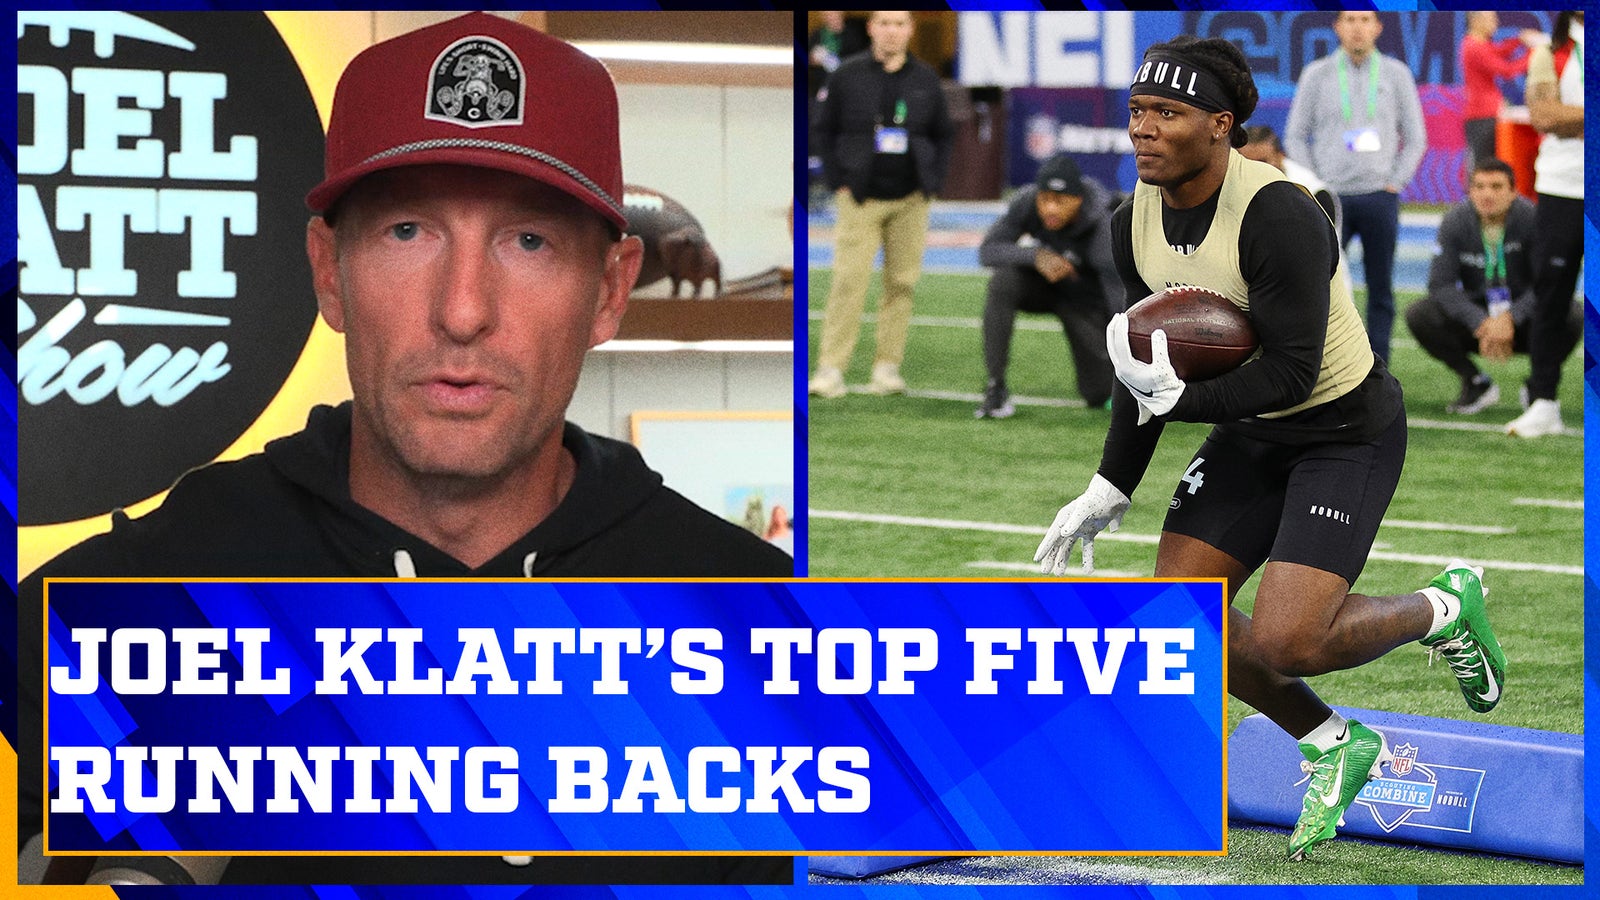 Blake Corum and Bucky Irving in Joel Klatt’s top five running backs